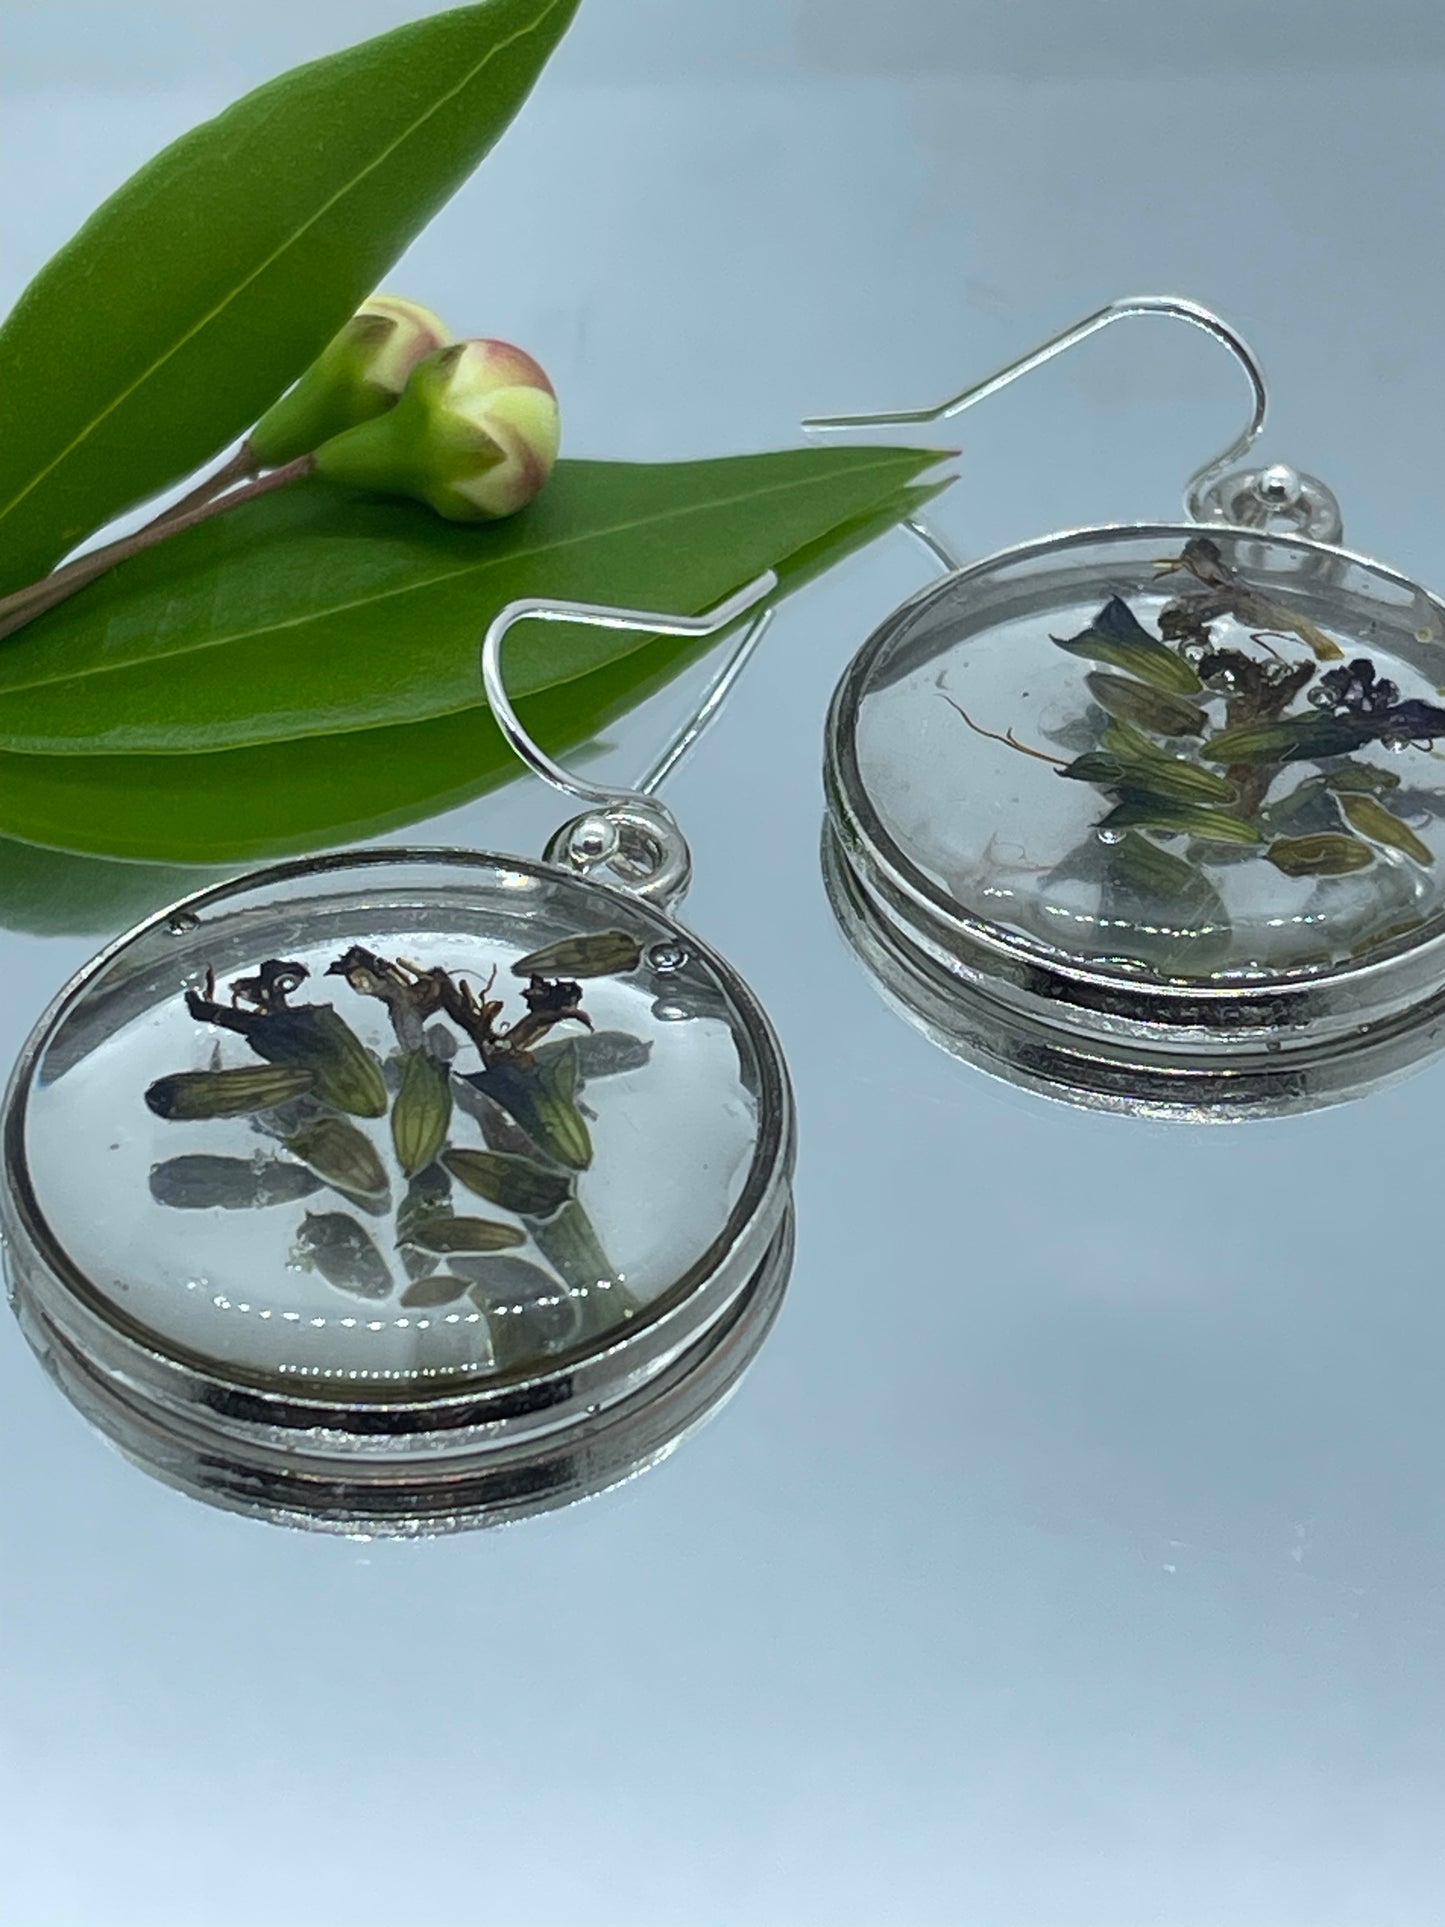 Athens garden flowers & resin disc earrings